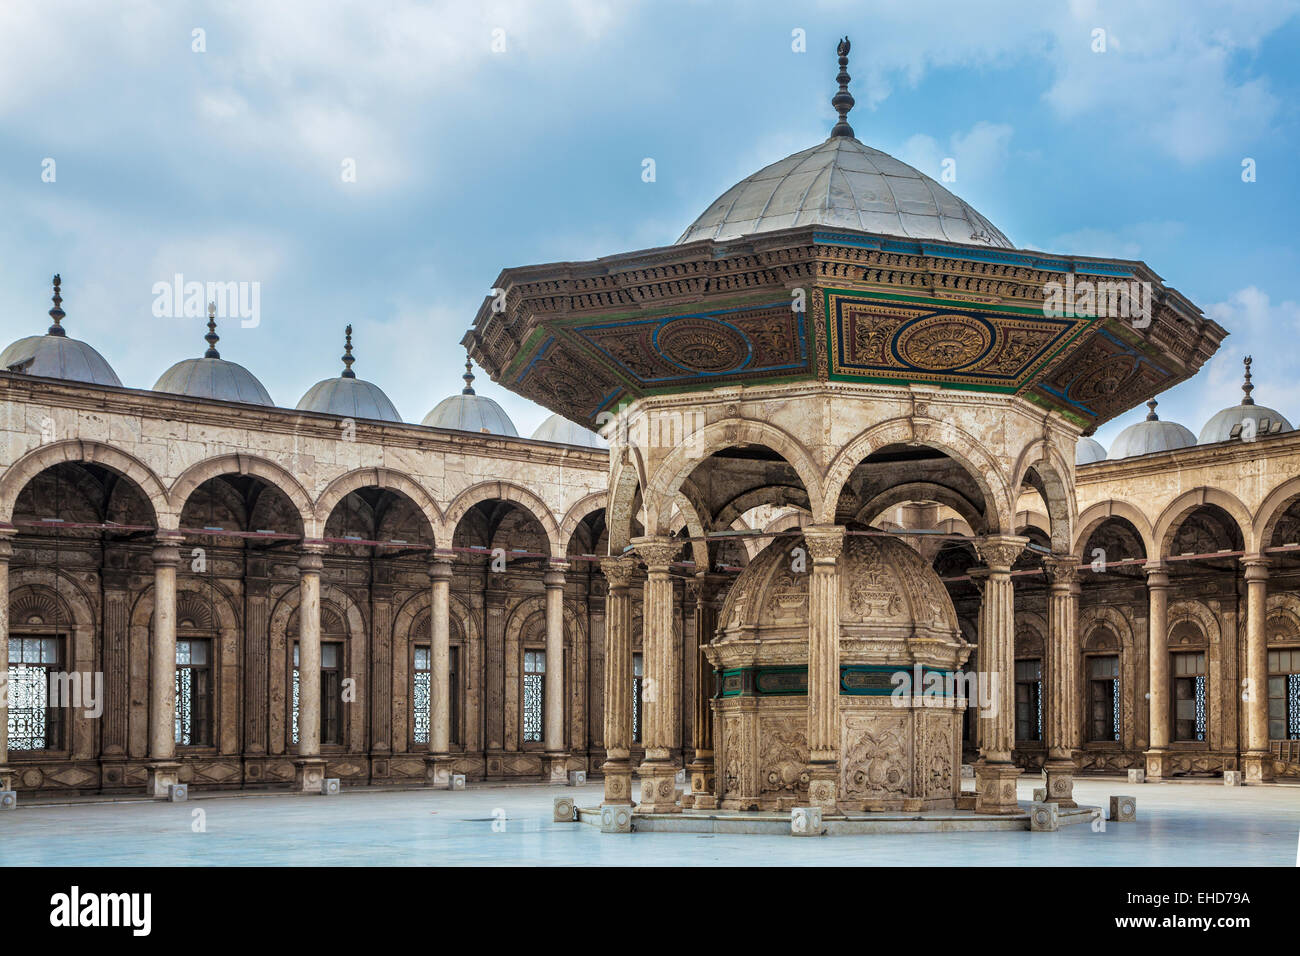 L'ablution en fontaine dans la cour de la grande mosquée de Mohammed Ali Pasha ou mosquée de La Citadelle du Caire. Banque D'Images